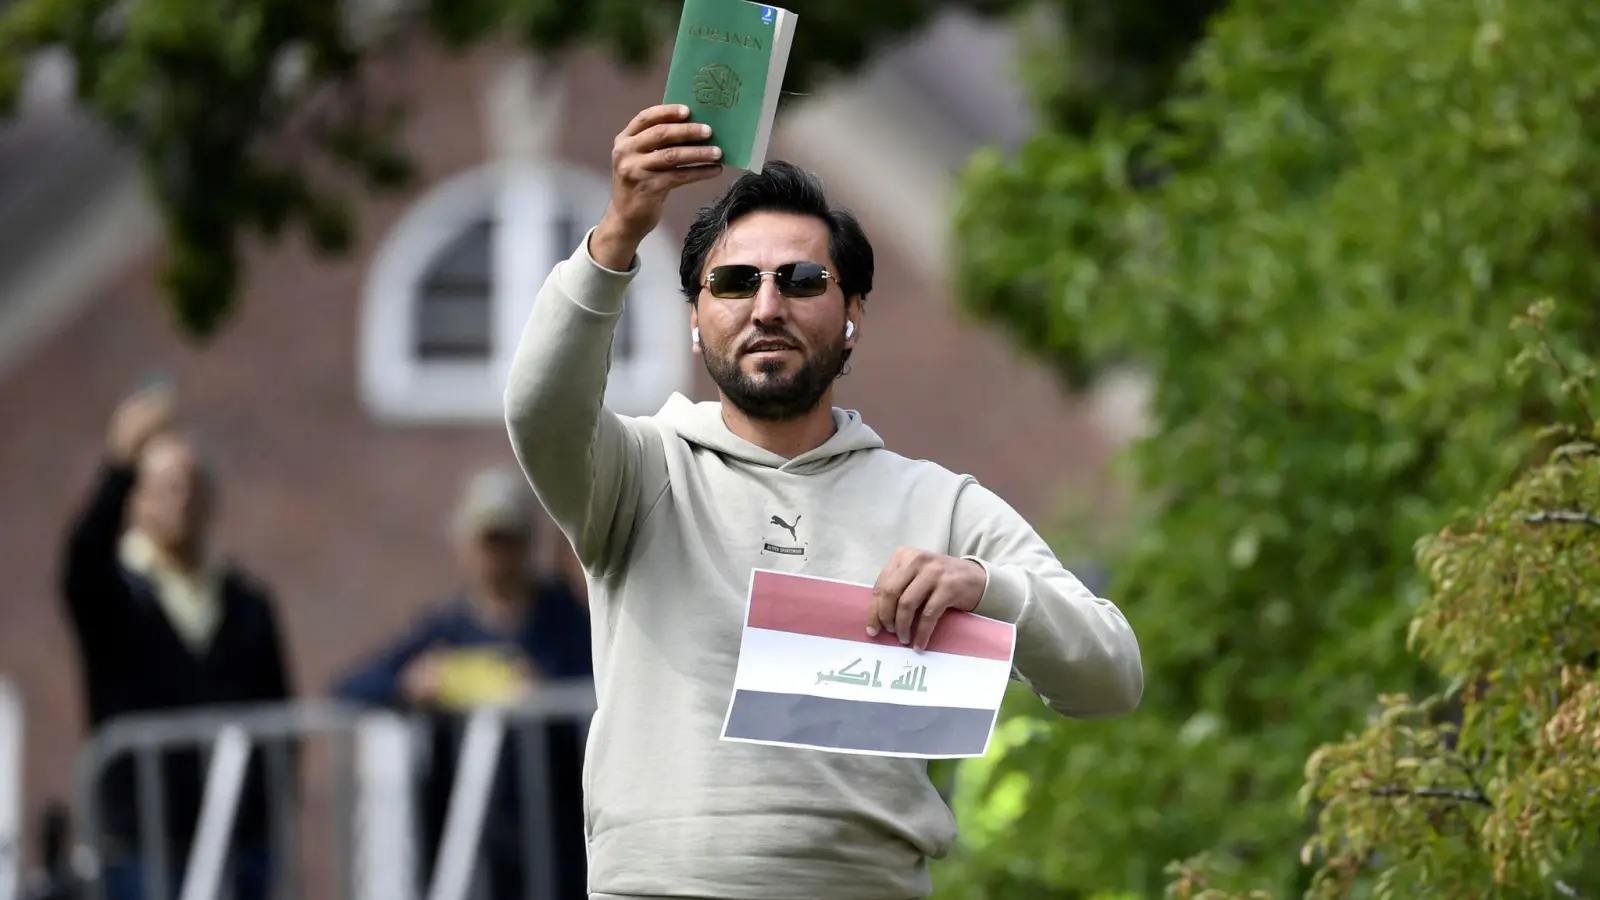 Ein Demonstrant hält eine Kopie des Korans hoch, die er mutmaßlich gemeinsam mit einer irakischen Fahne verbrennen will. (Foto: Oscar Olsson/TT NEWS AGENCY/AP/dpa)